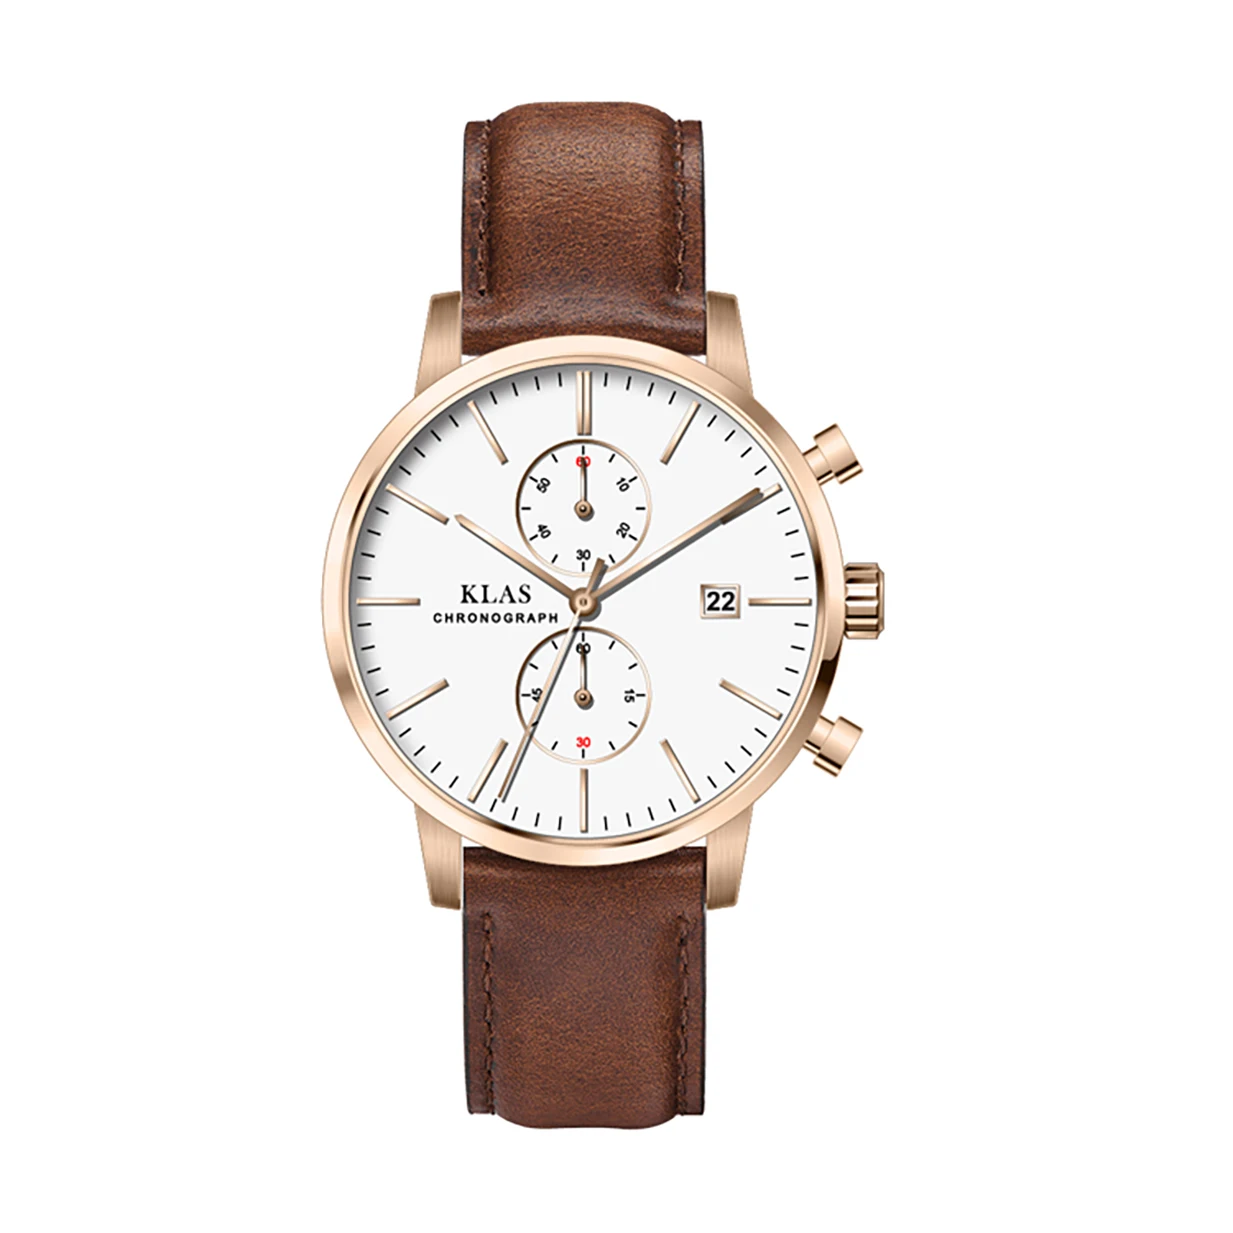 2021 влагостойкие кварцевые мужские часы с кожаным ремешком комбинированная цена